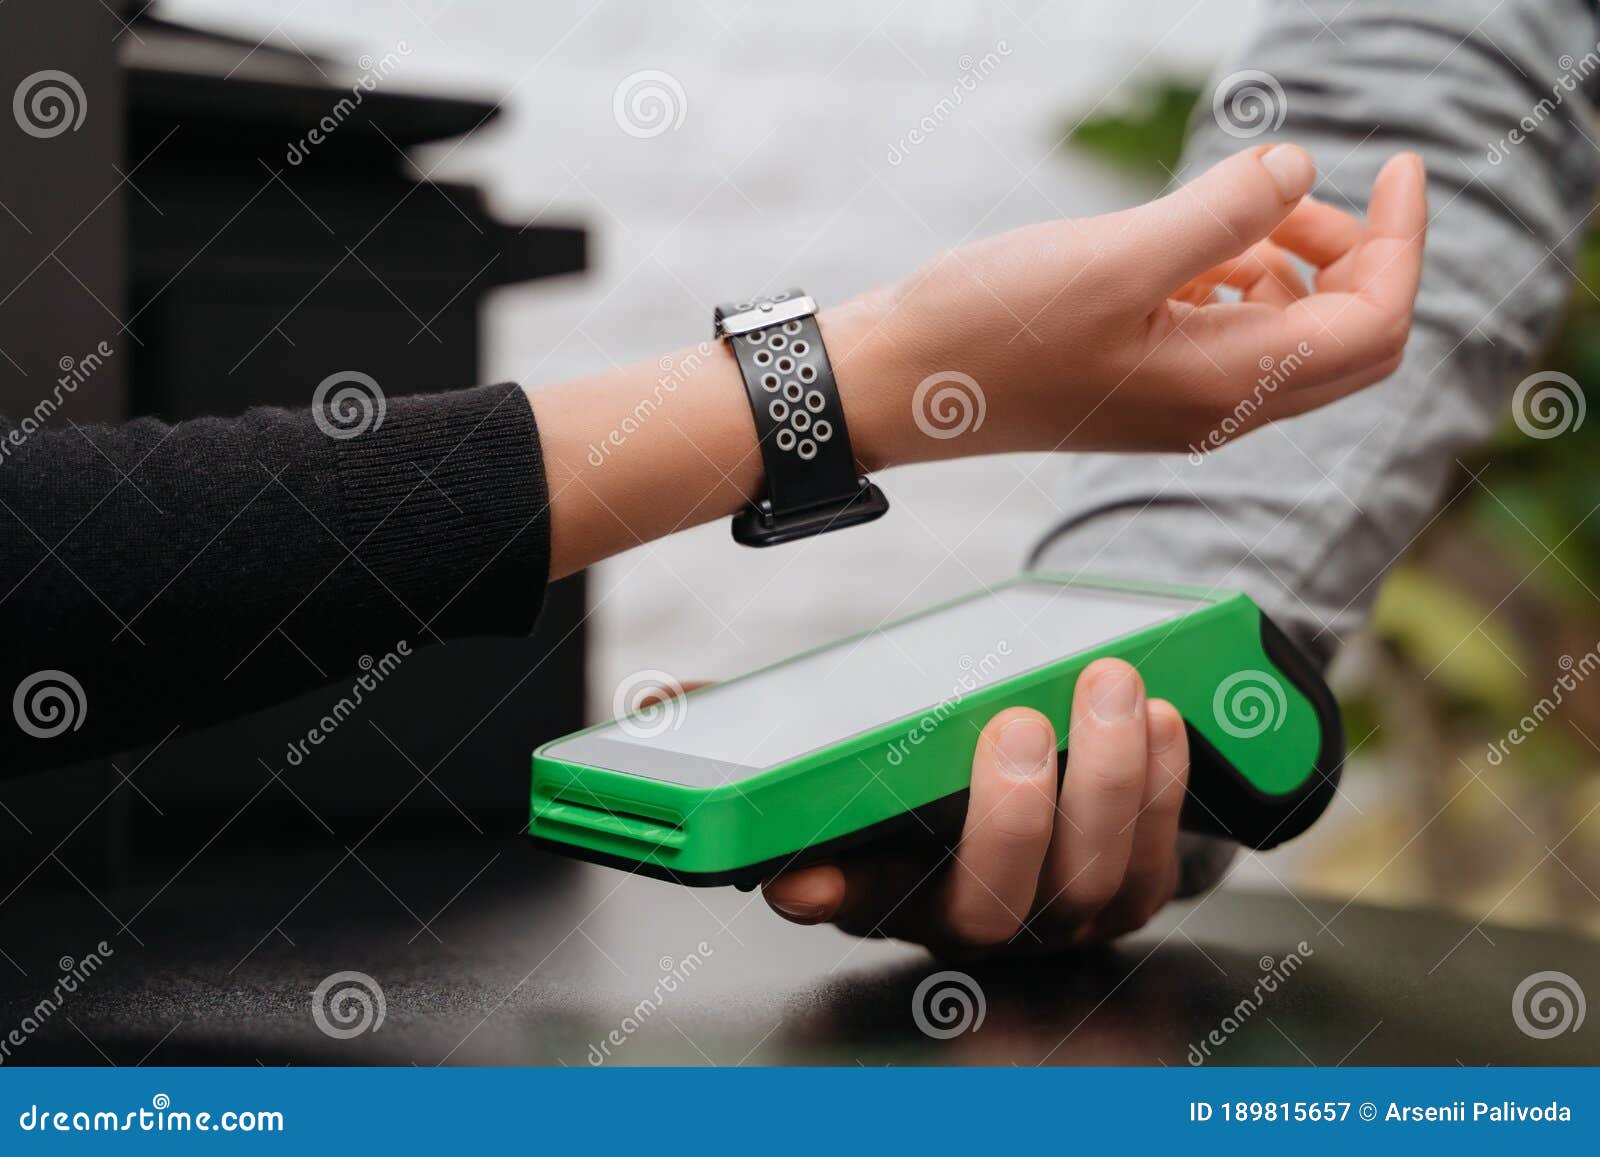 Cliente Que Utiliza Smartwatch Para Pagos Sin Contacto a Través De Nfc  Terminal Imagen de archivo - Imagen de pagar, dinero: 189815657